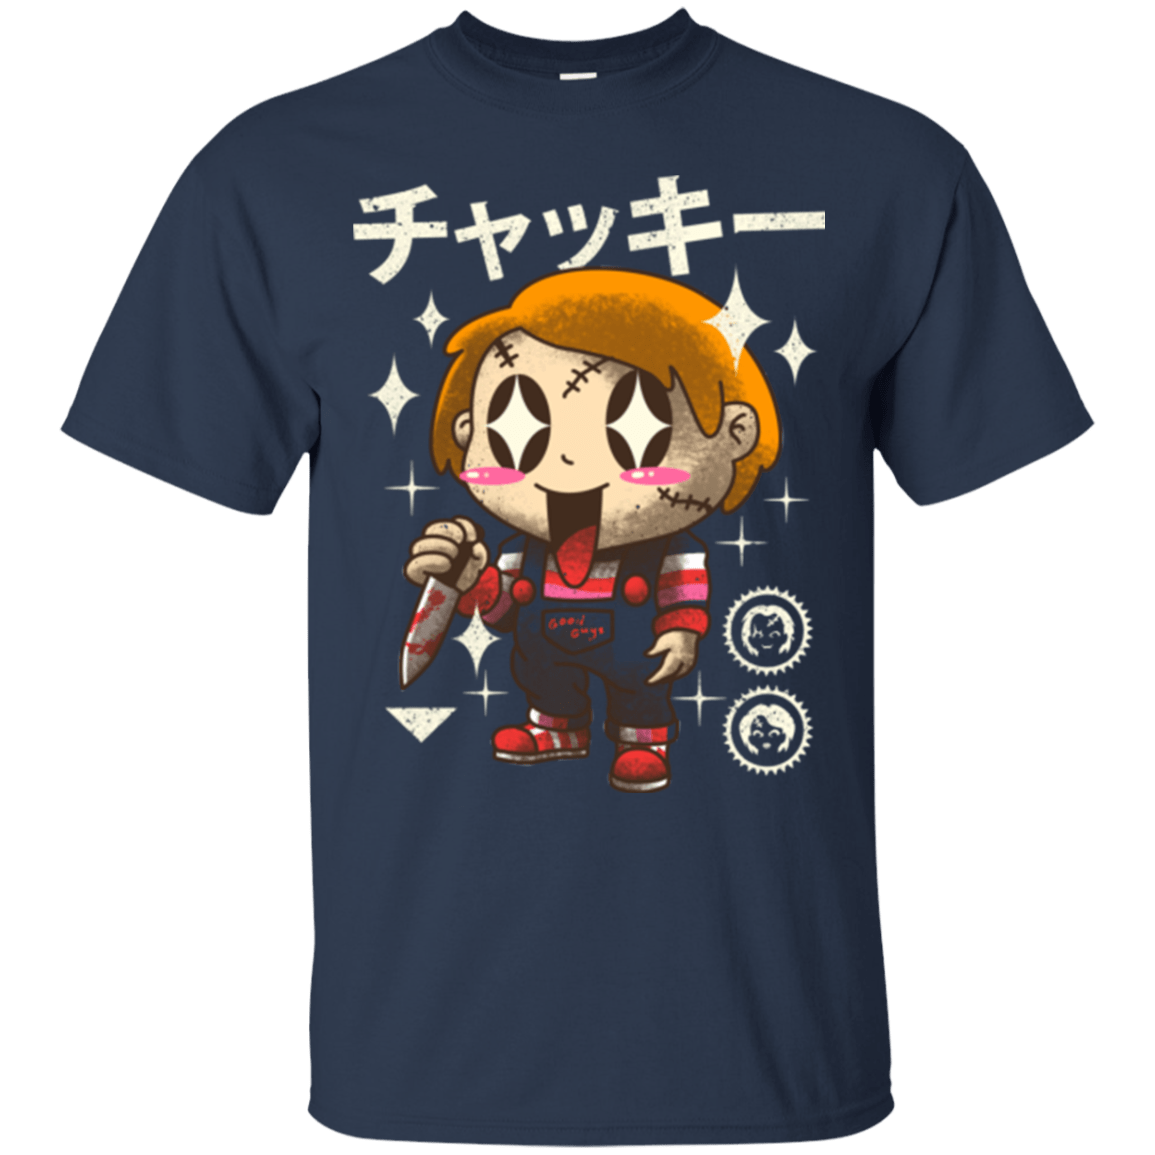 T-Shirts Navy / Small Kawaii Doll T-Shirt